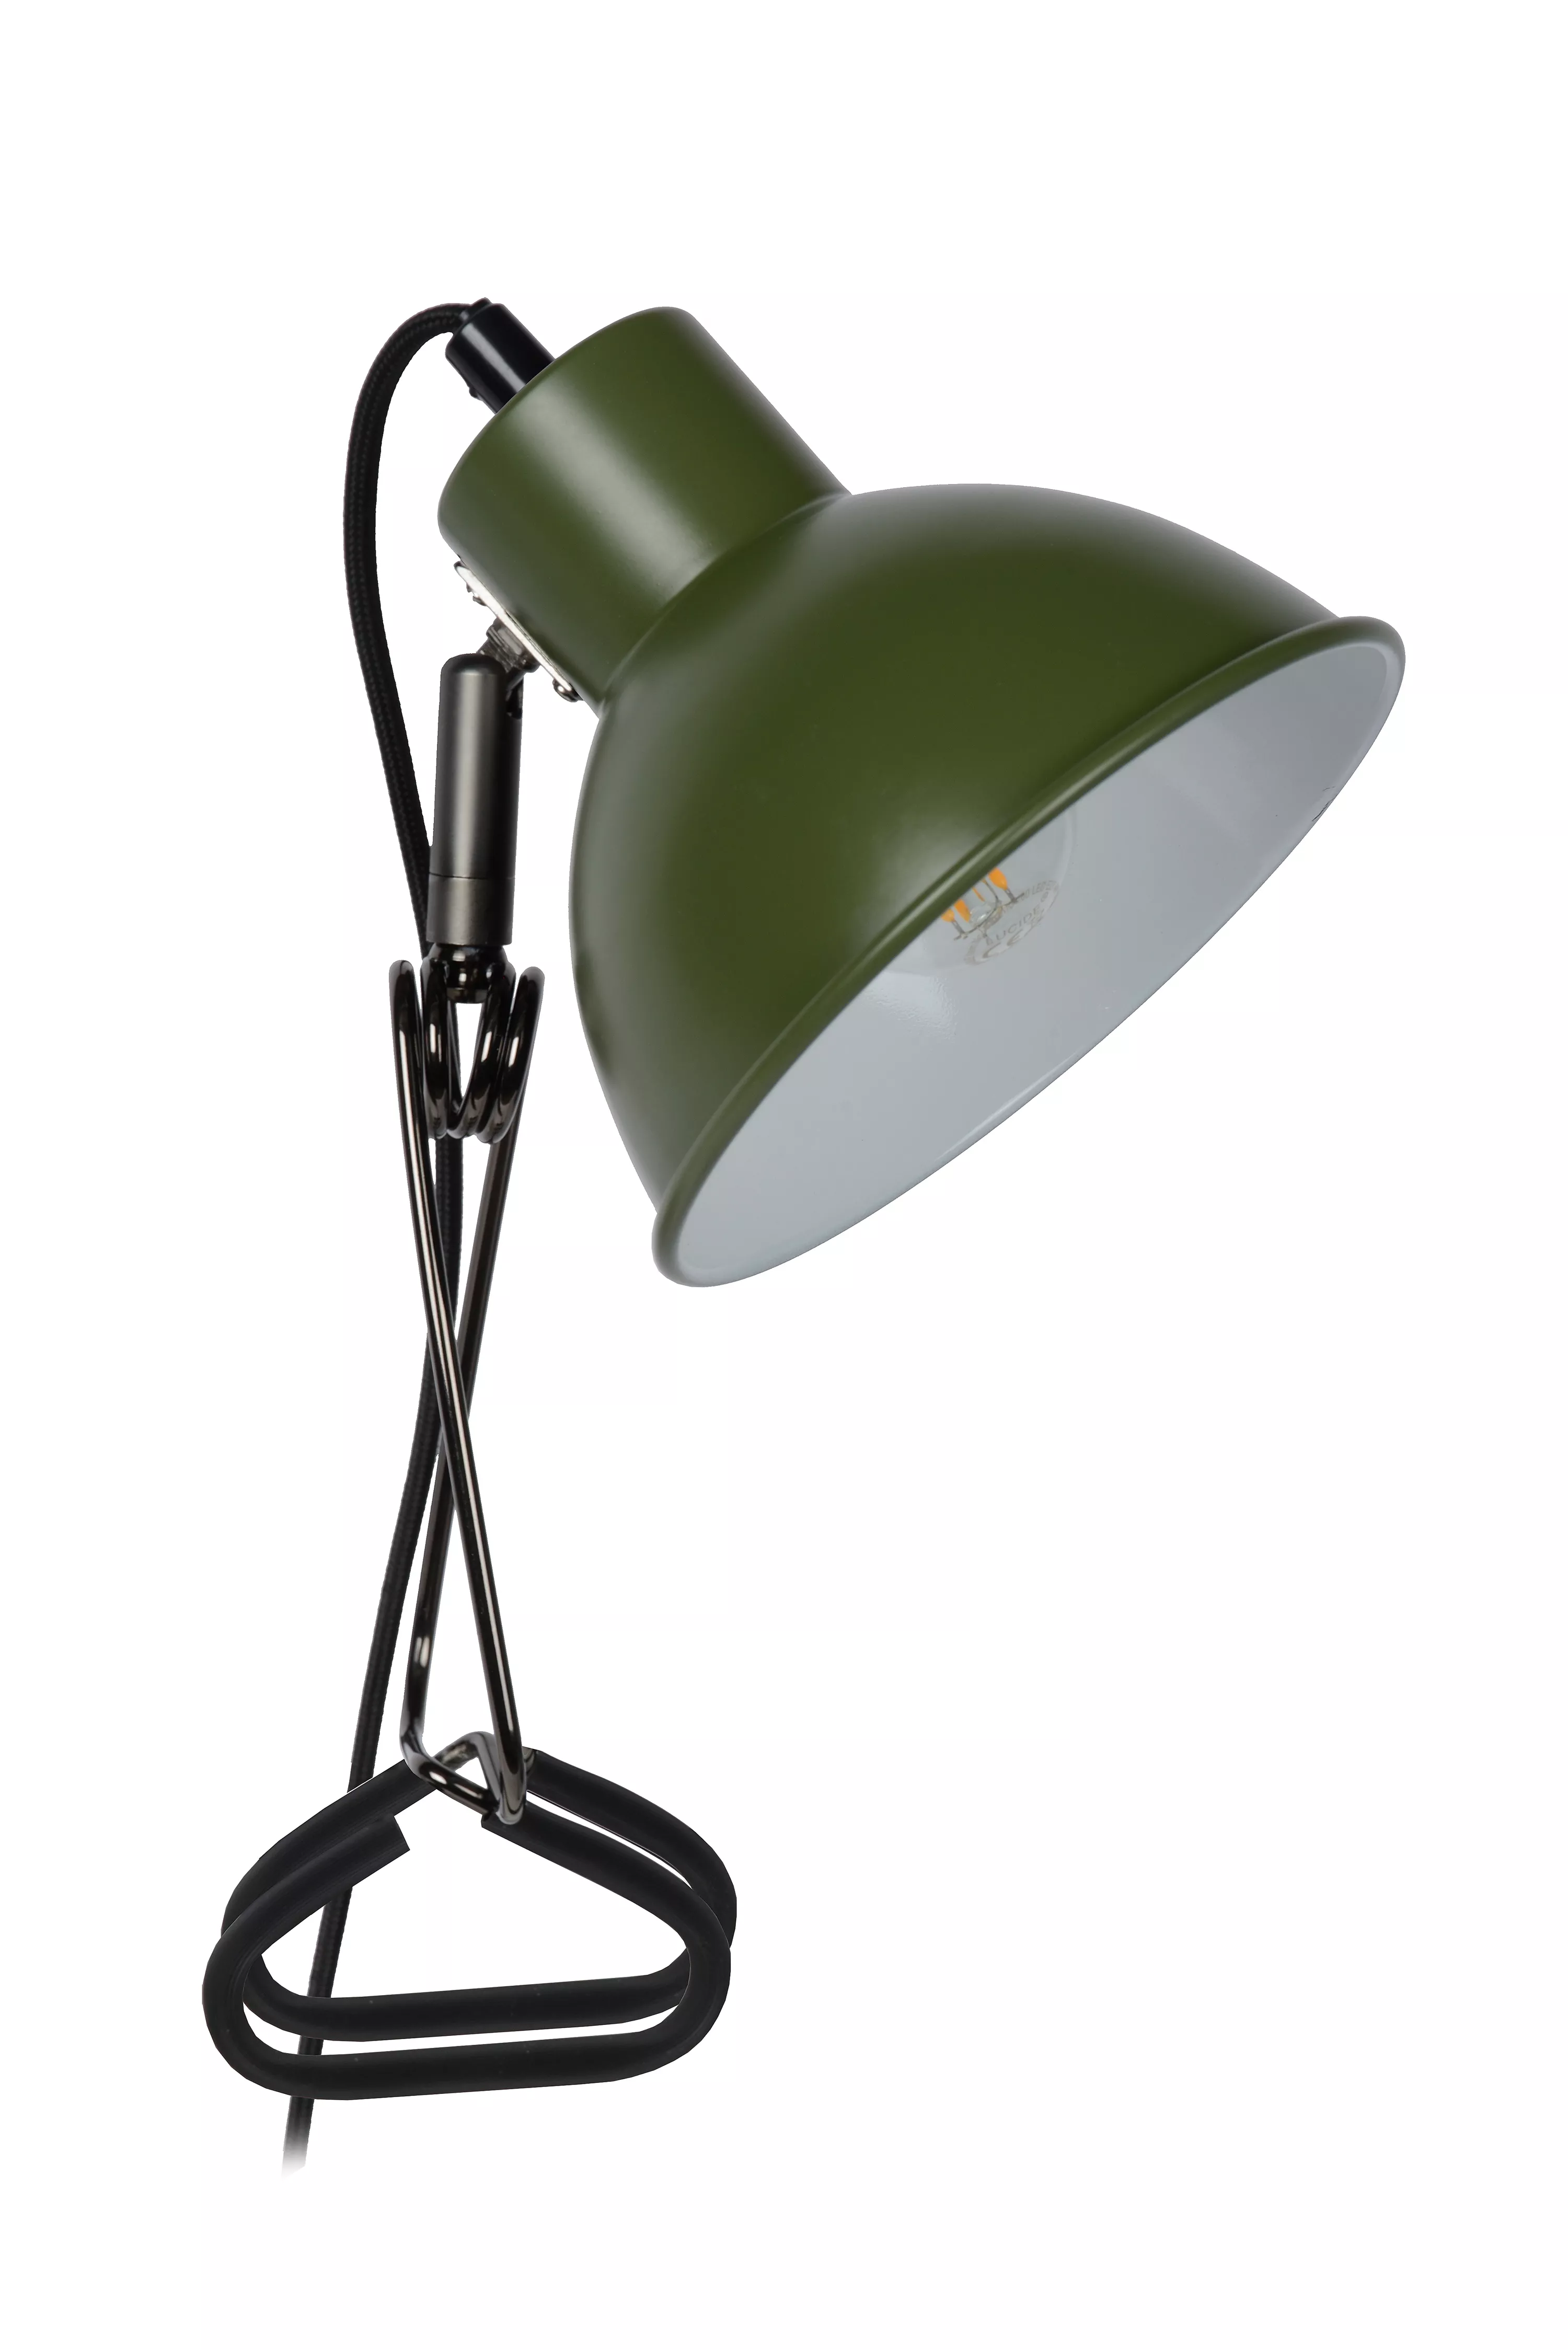 Flexibilnú lampičku Moys s klipom využijete takmer všade vďaka upínacej spone, navyše disponuje smerovateľnou hlavou i ramenom.